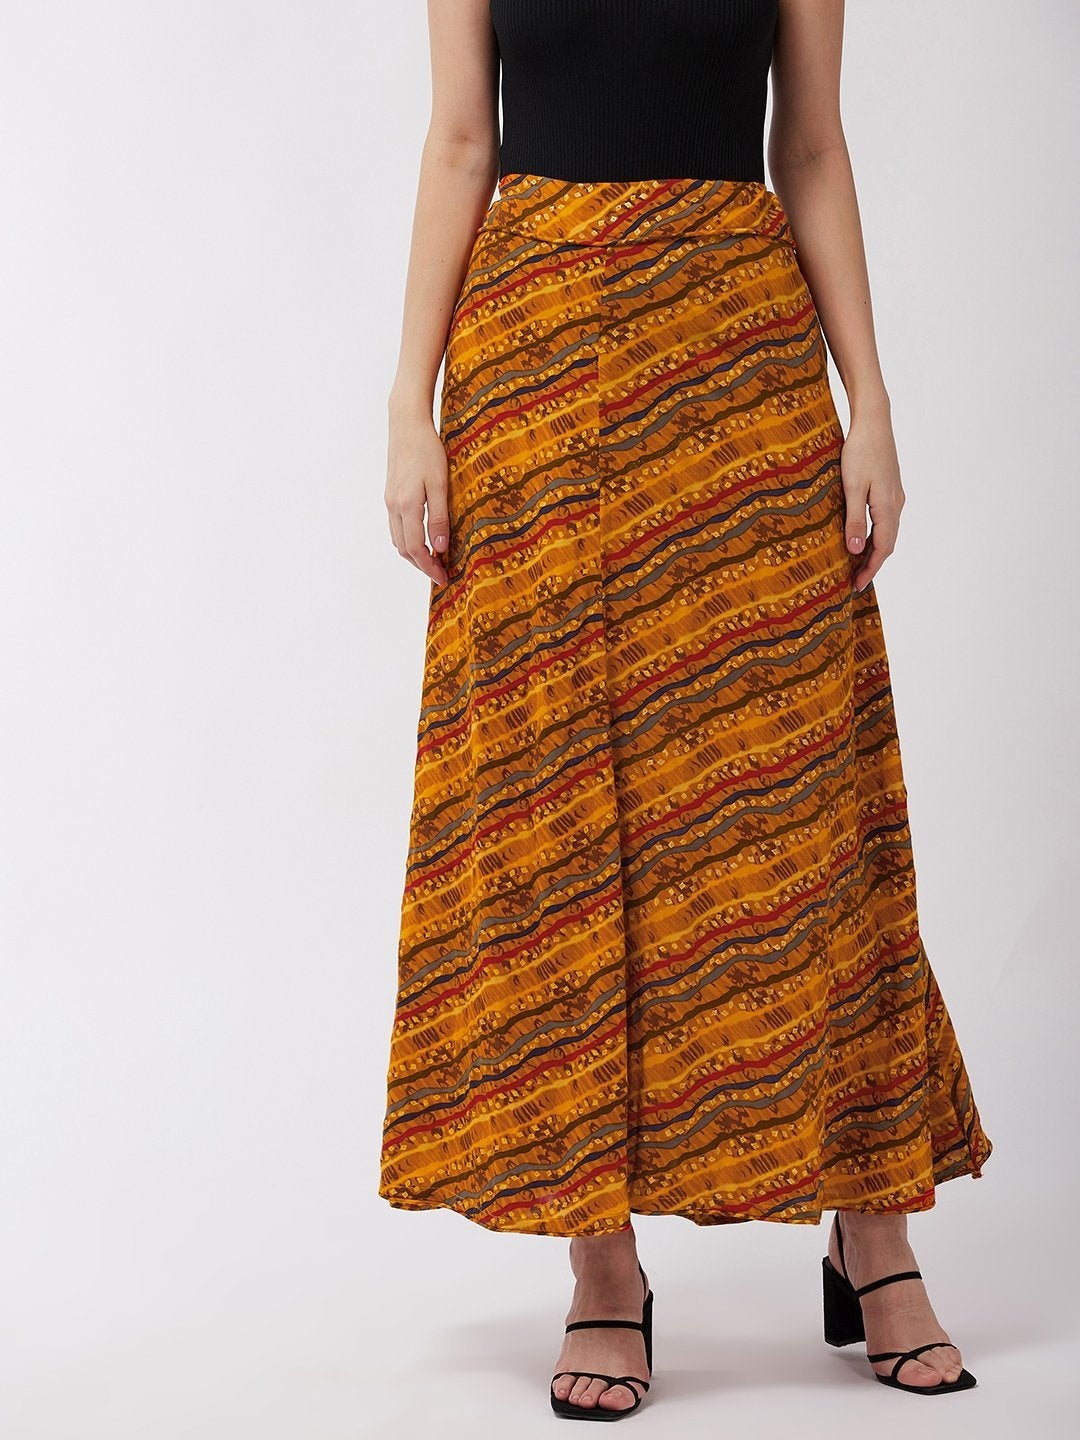 Women's Corn Yellow Lahariya Skirt - InWeave